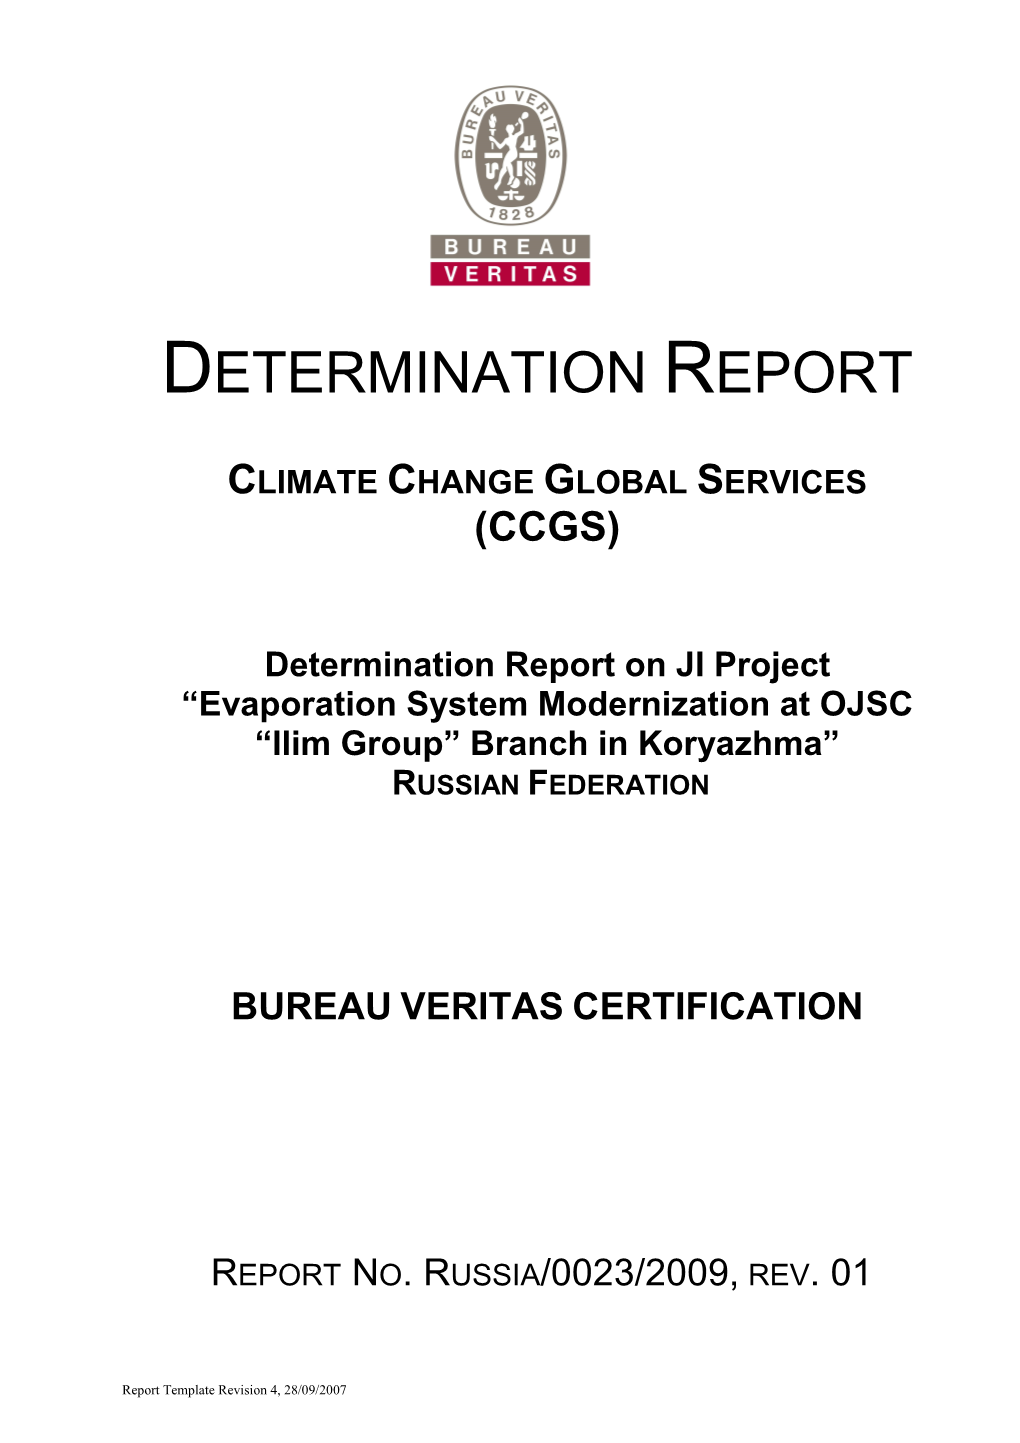 Determination Report